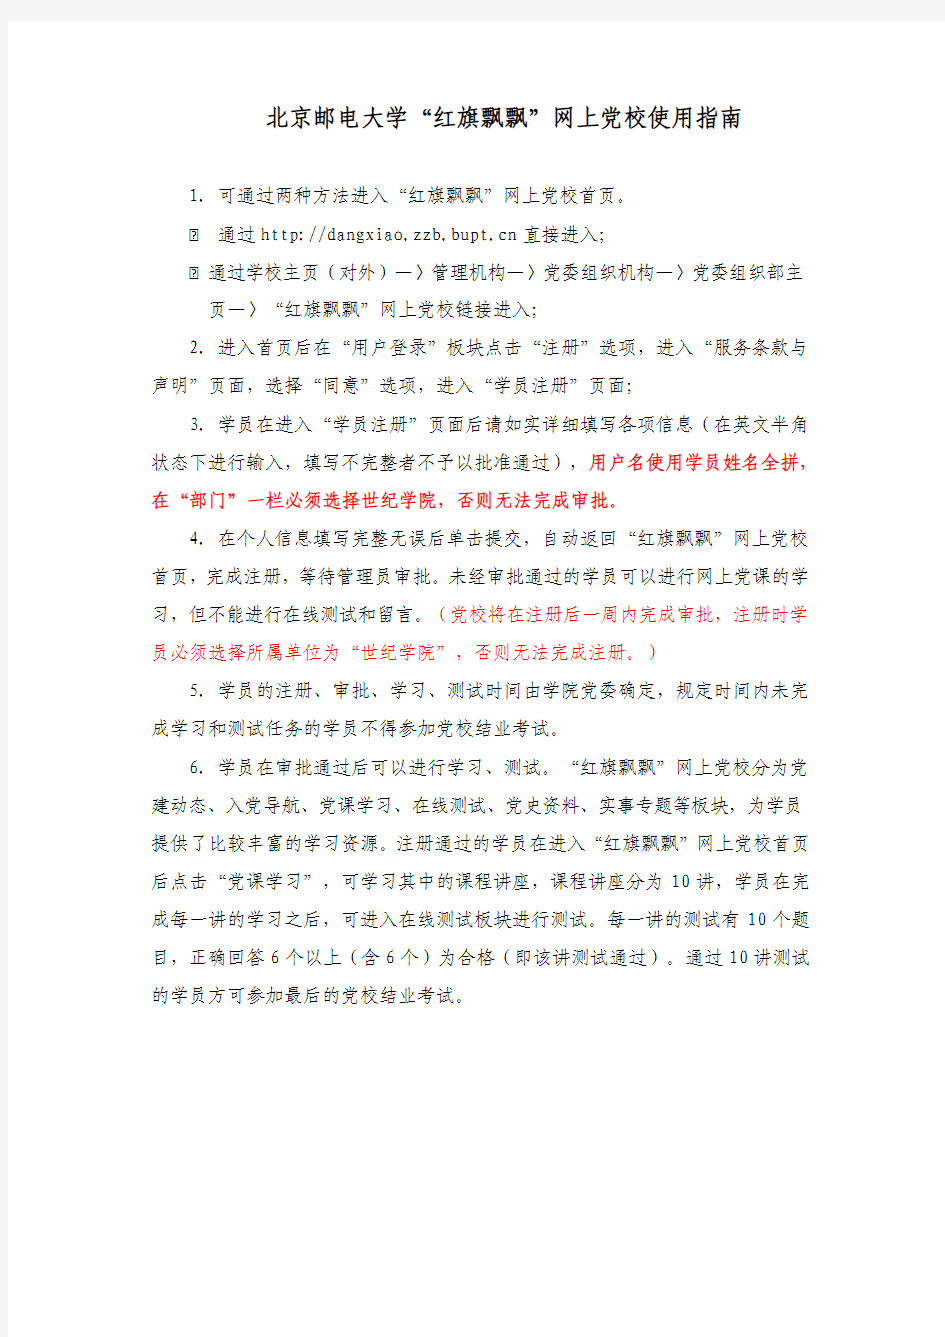 北京邮电大学“红旗飘飘”网上党校使用指南